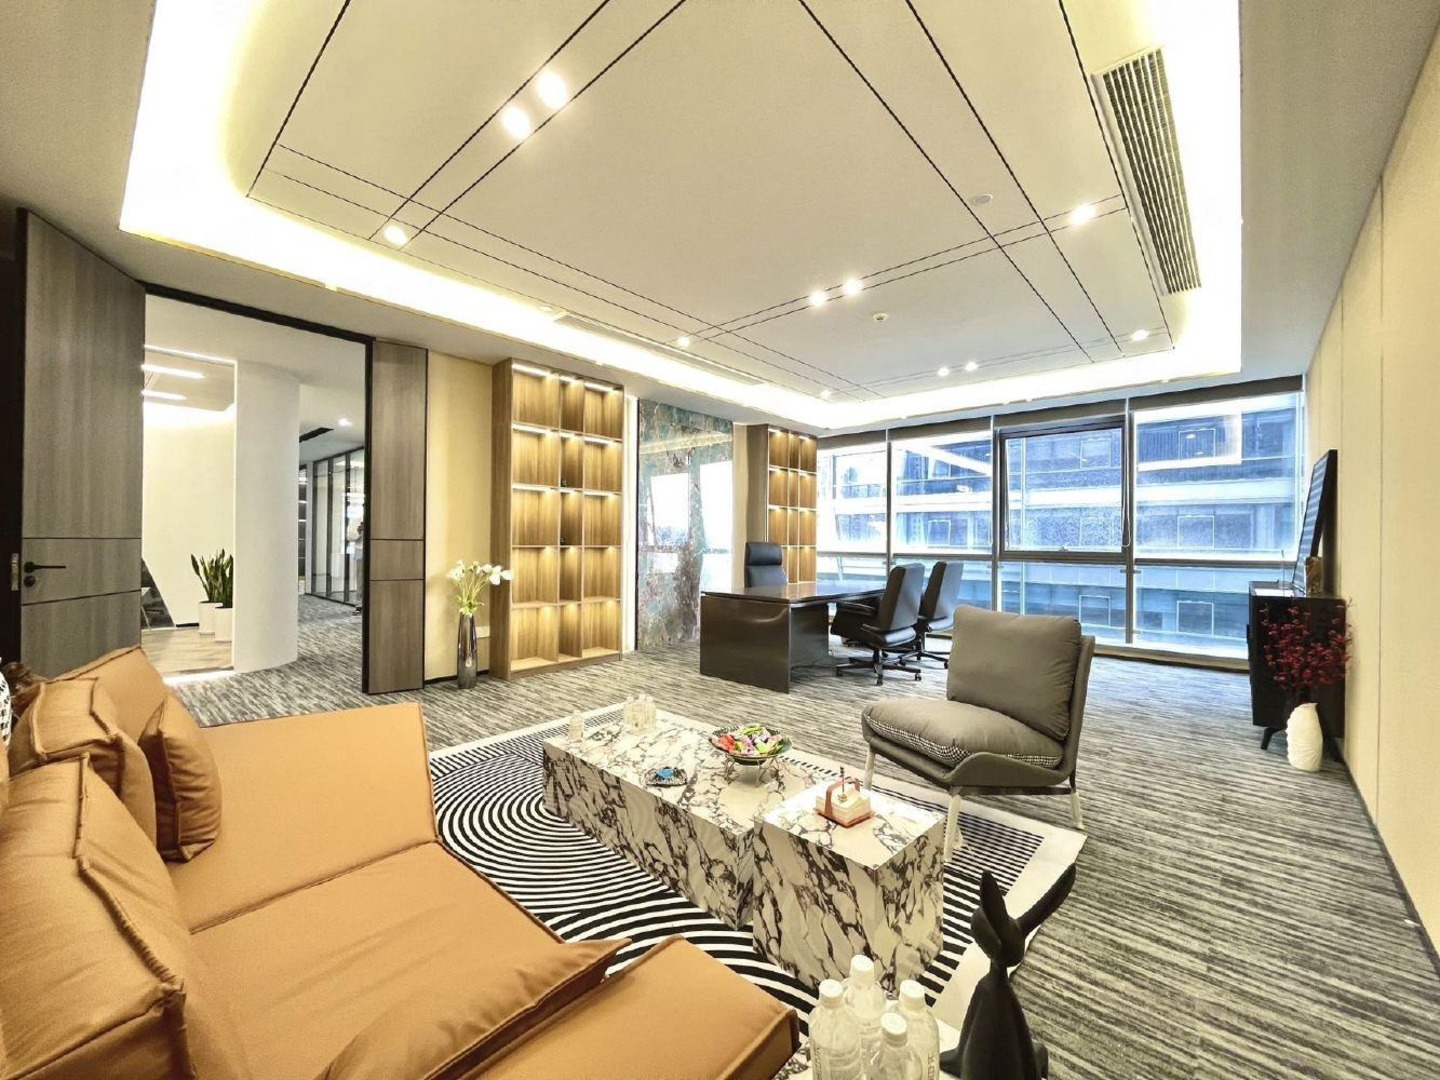 博地精装500平办公室丨全新全套家具丨高区无遮挡视野丨随时看